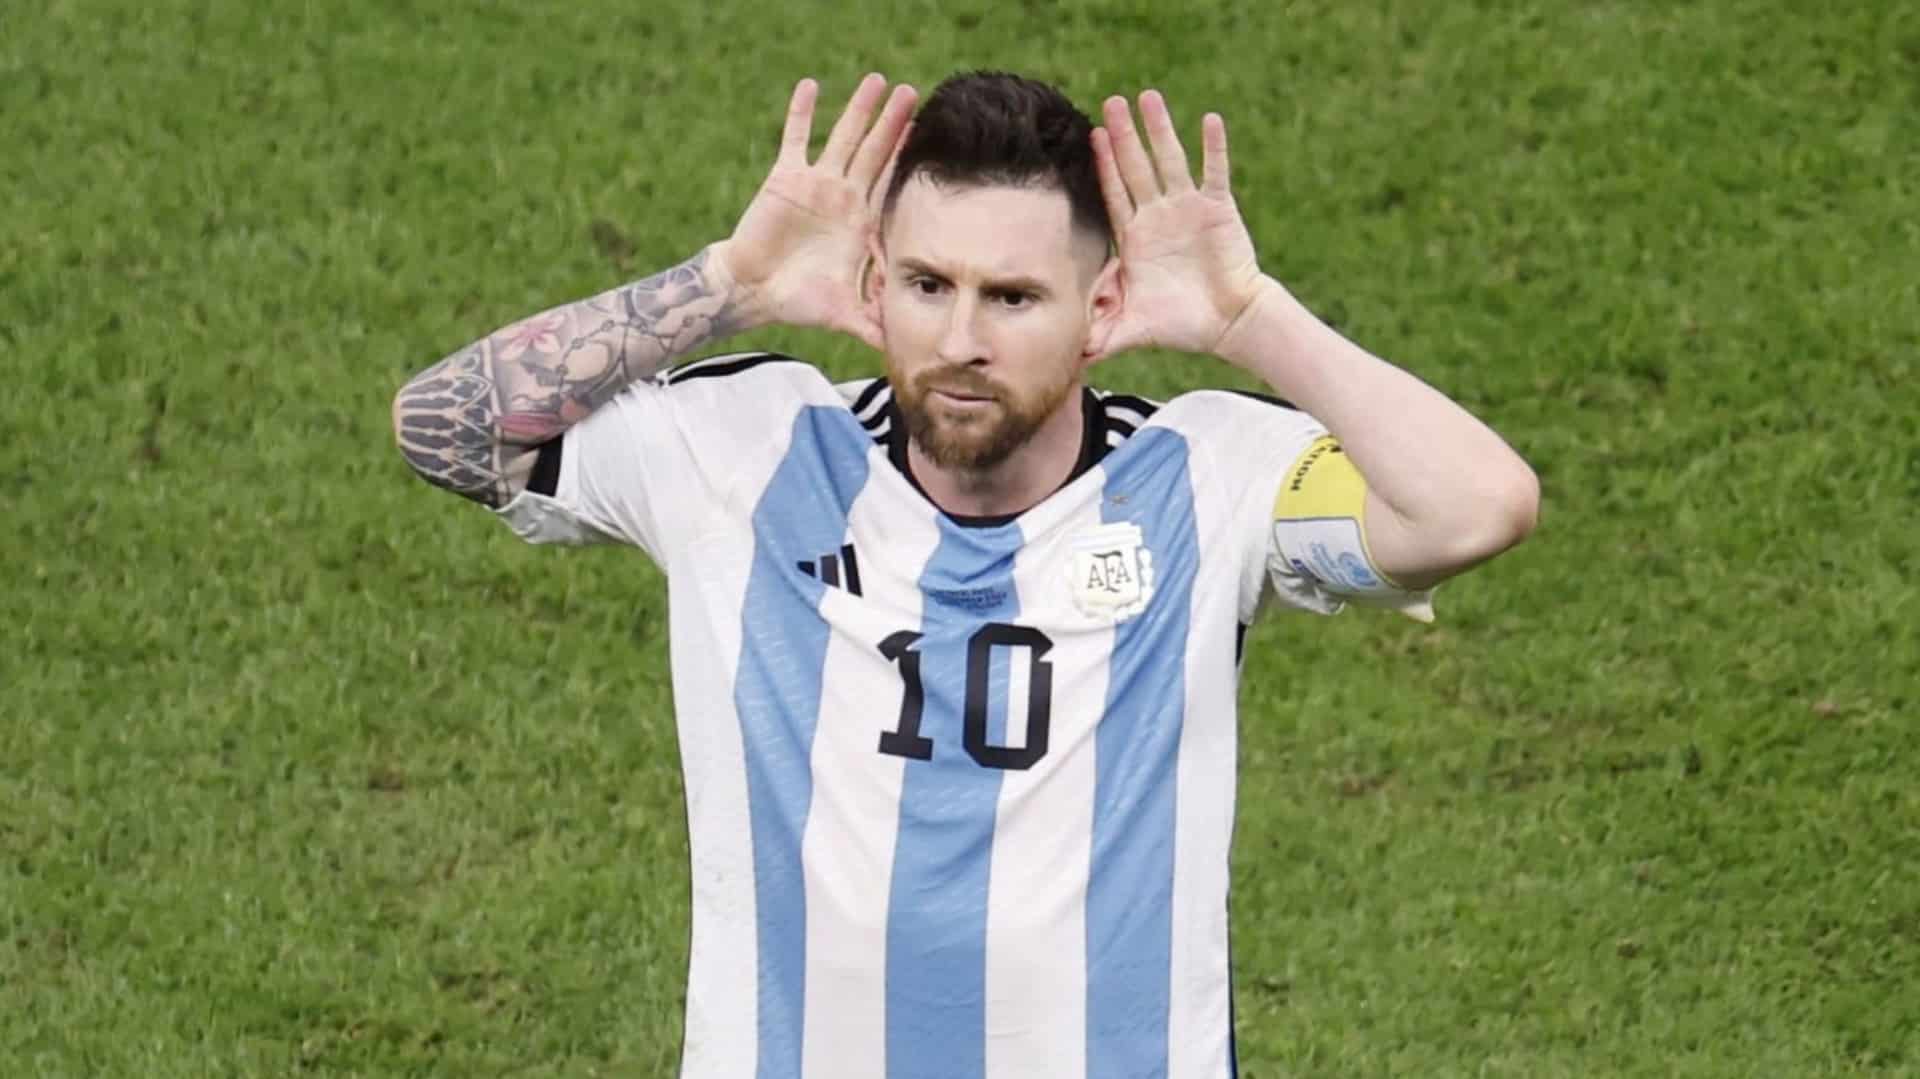 “Me arrepentí automáticamente”: Lionel Messi habló del Topo Gigio a Van Gaal